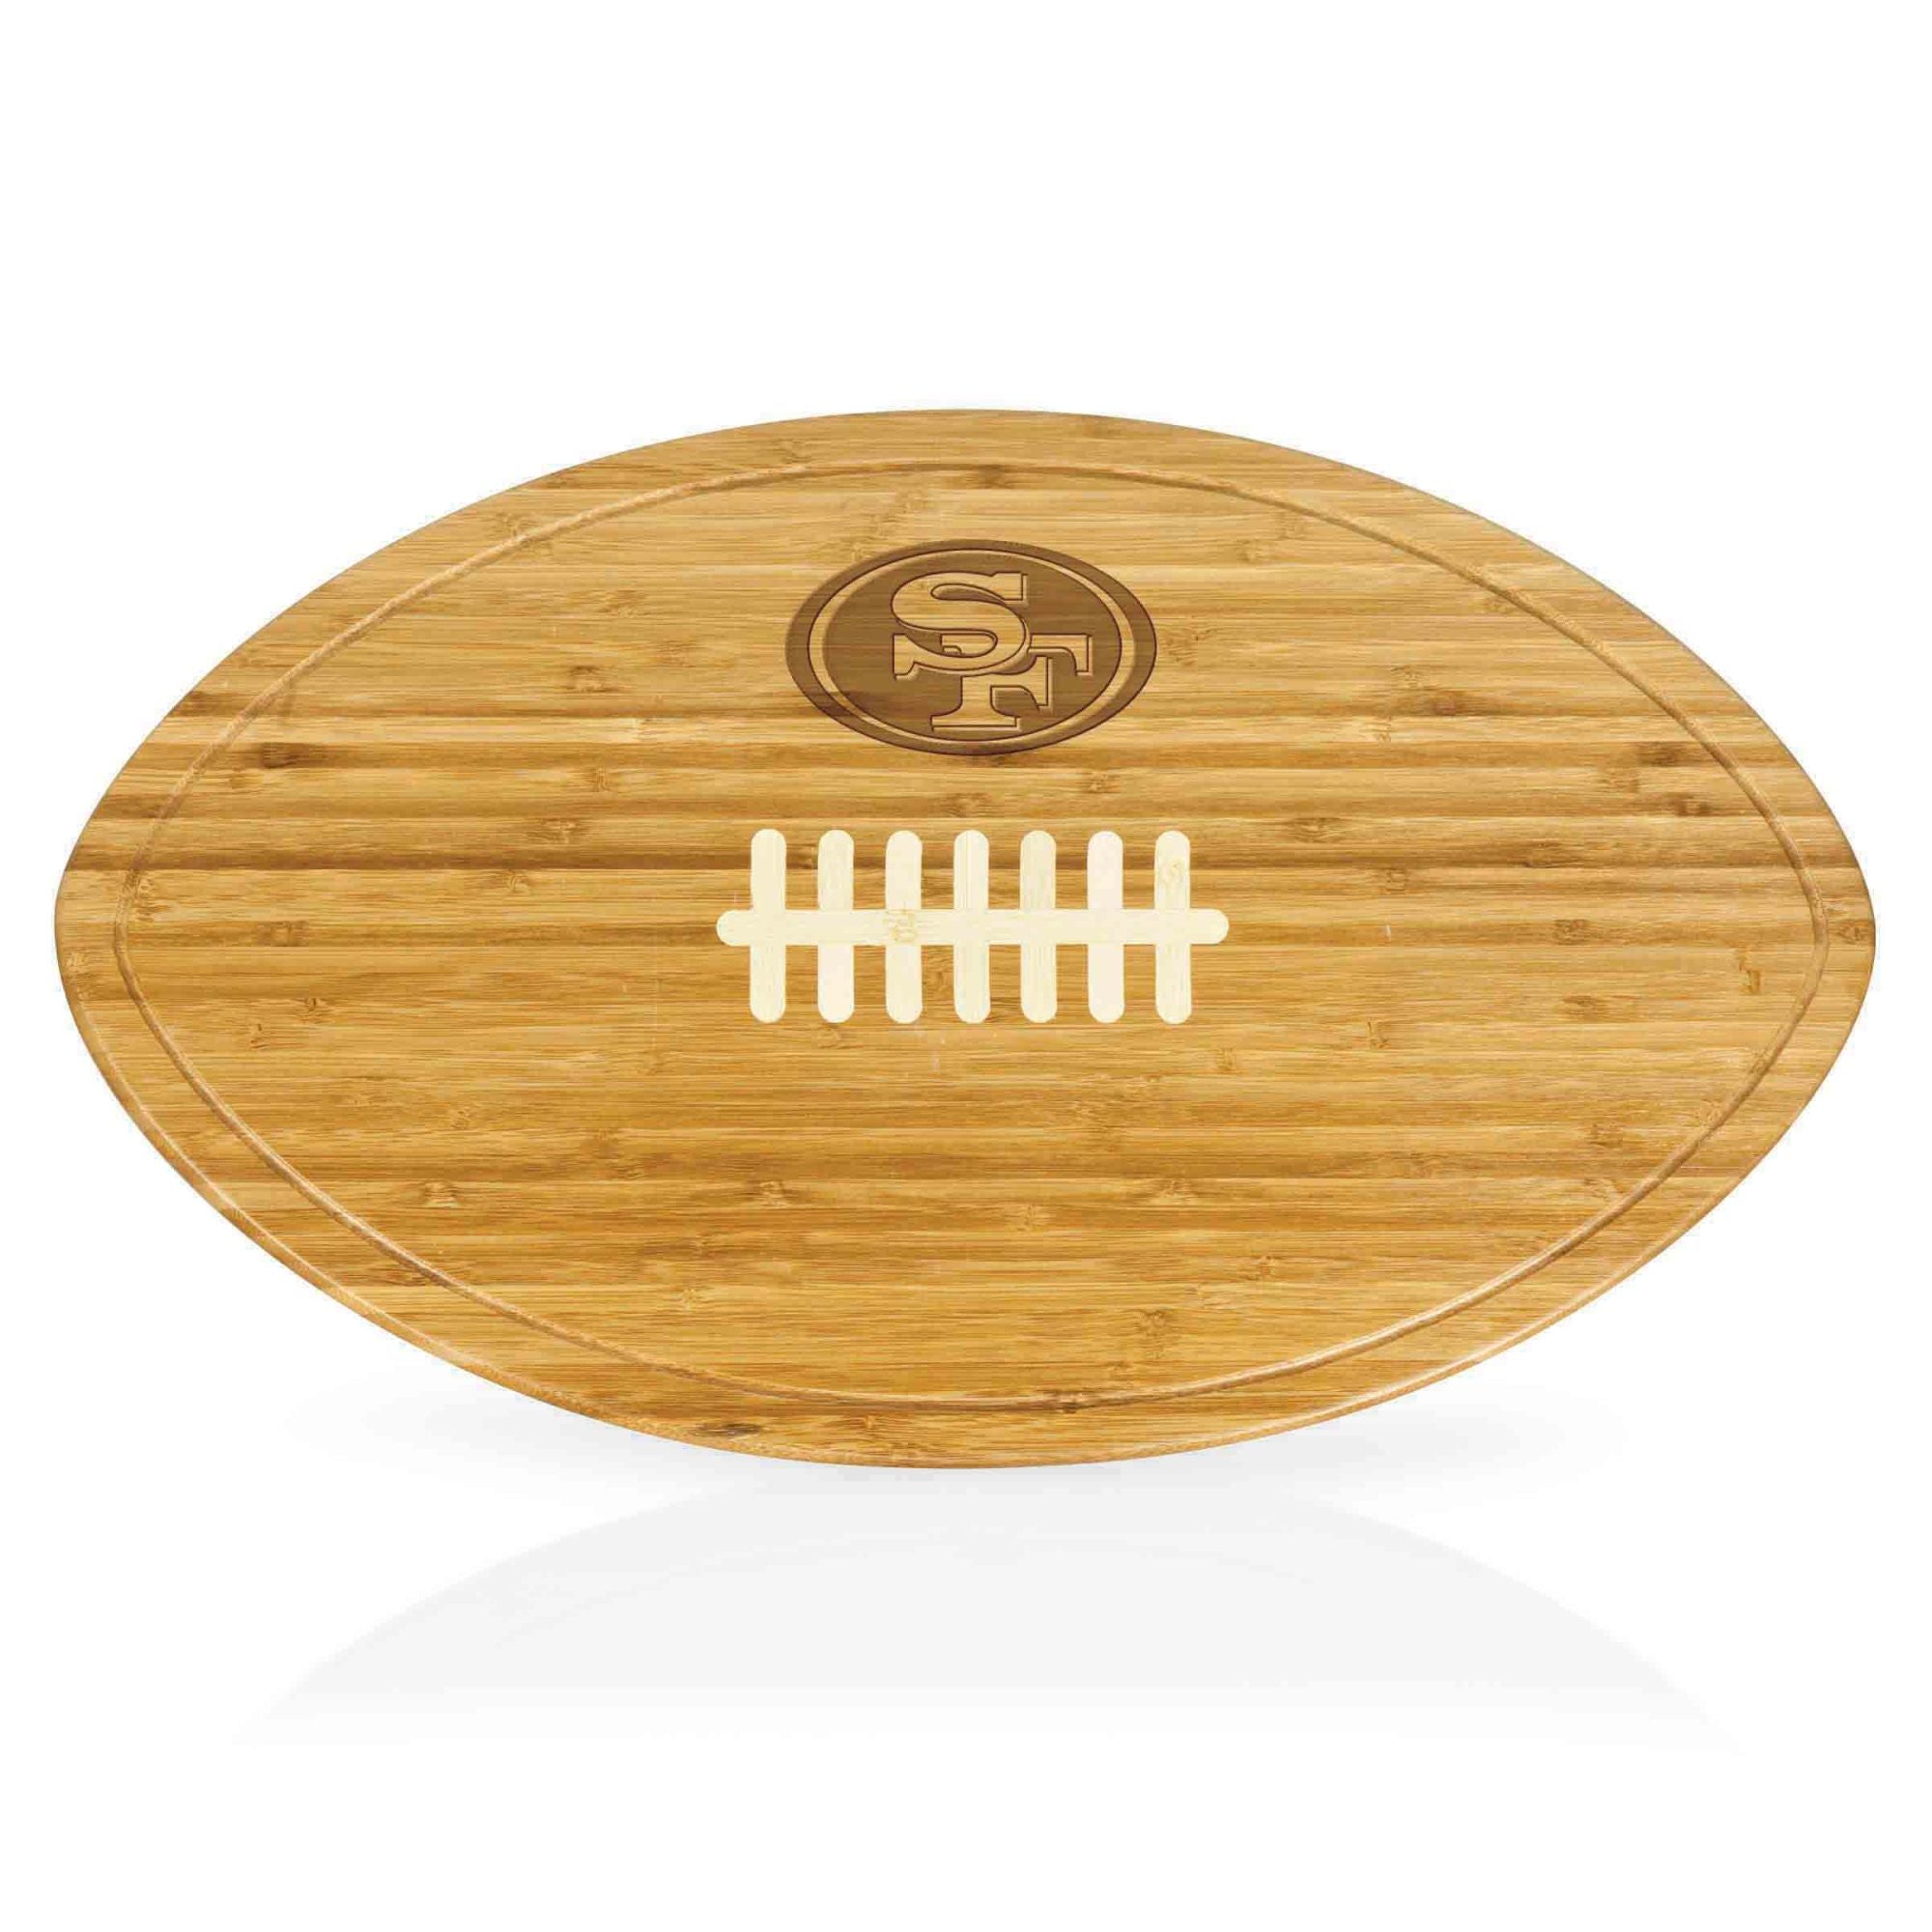 San Francisco 49ers - Kickoff Football Cutting Board & Serving Tray